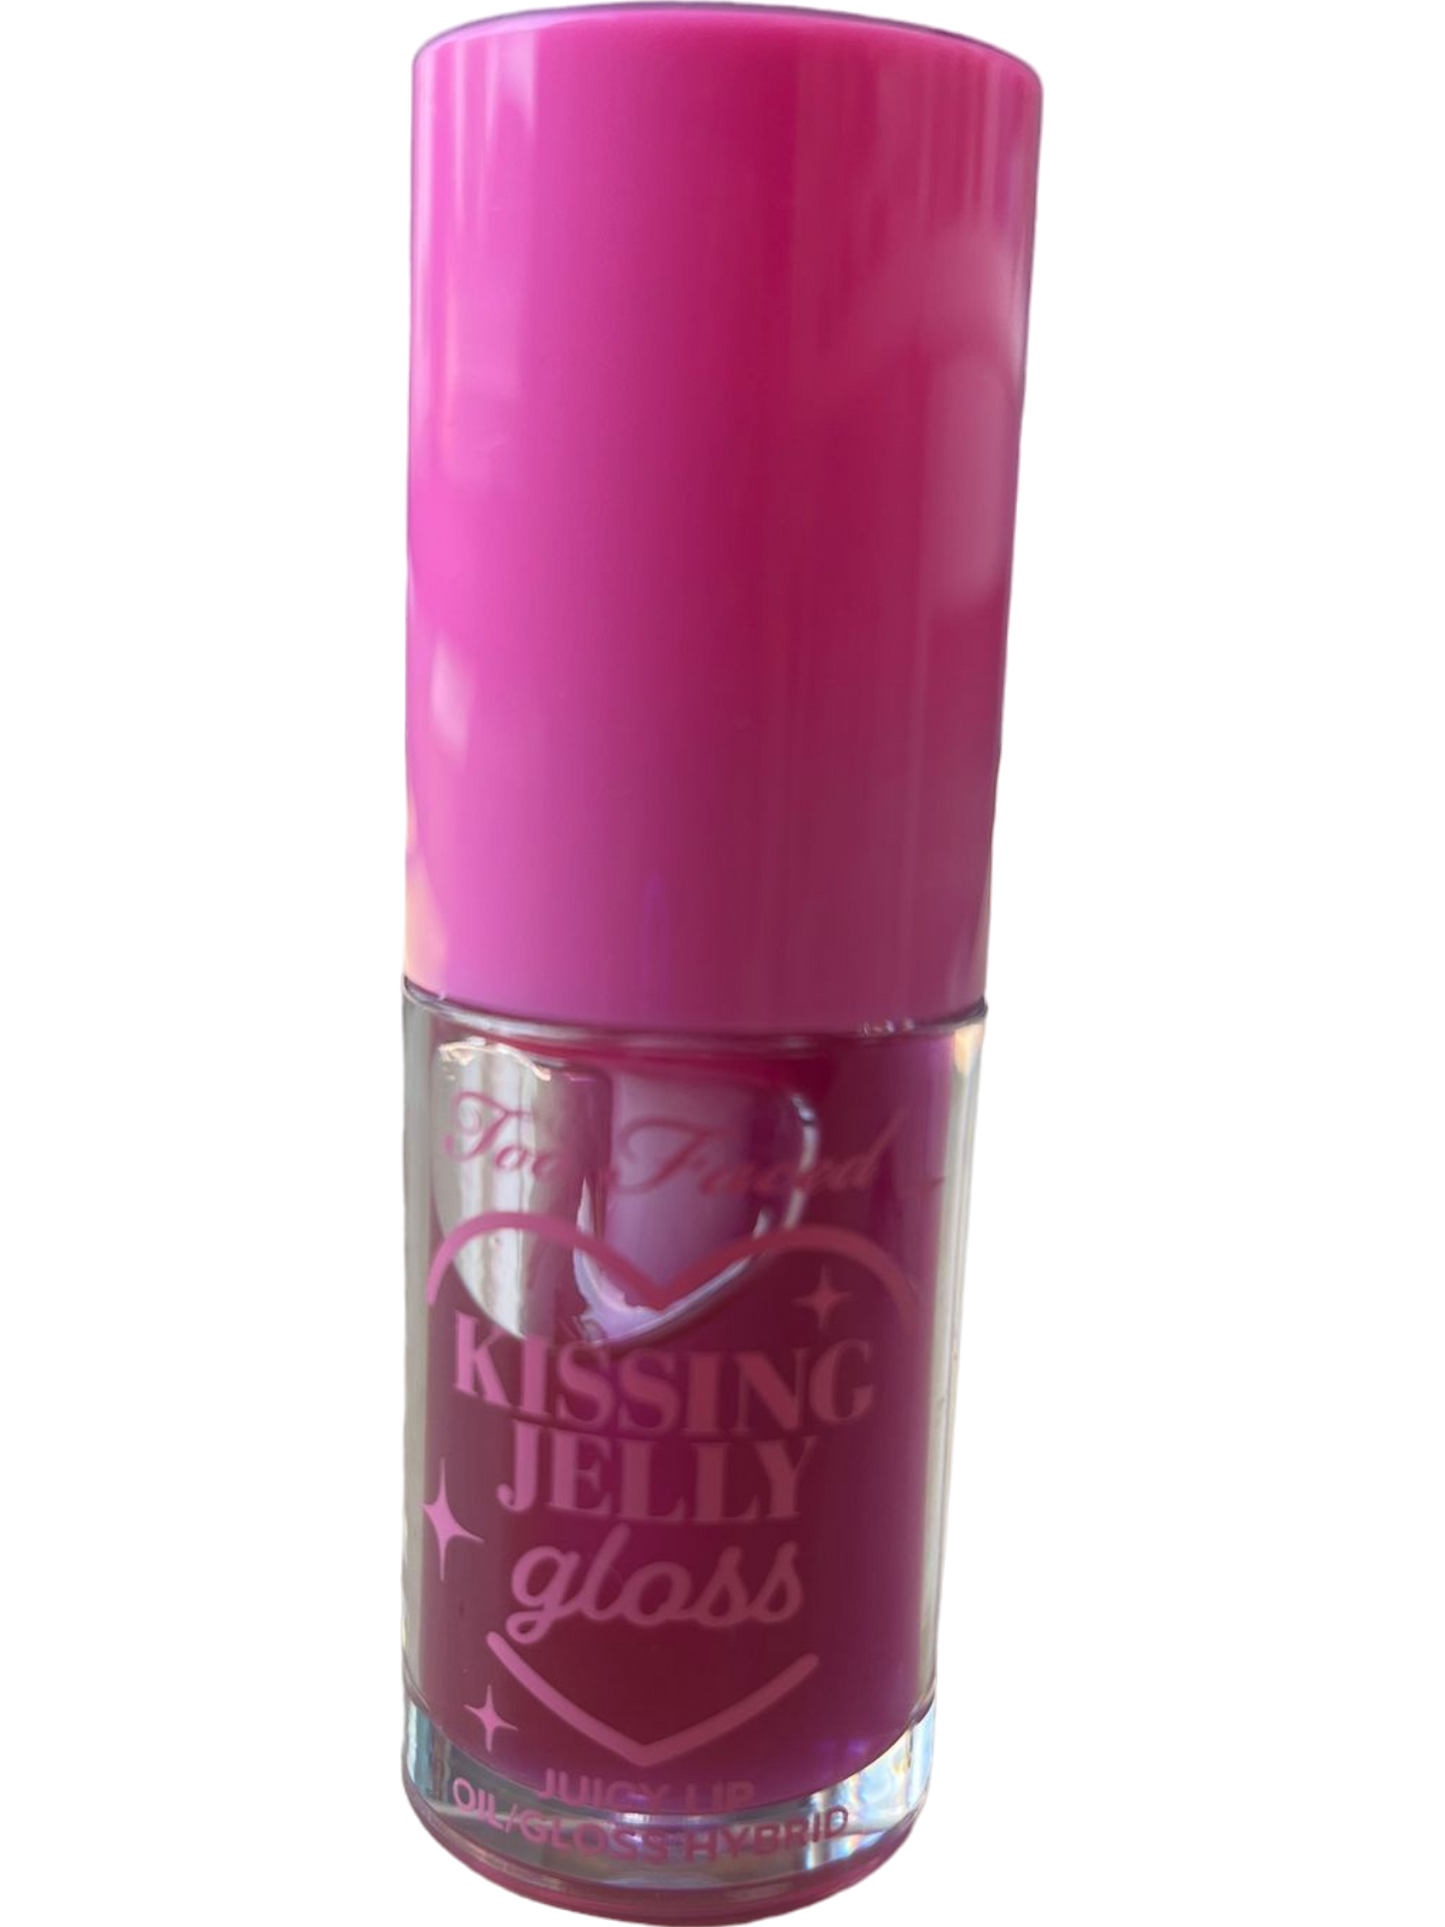 Raspberry Kissing Jelly Gloss Lip Oil Hybrid